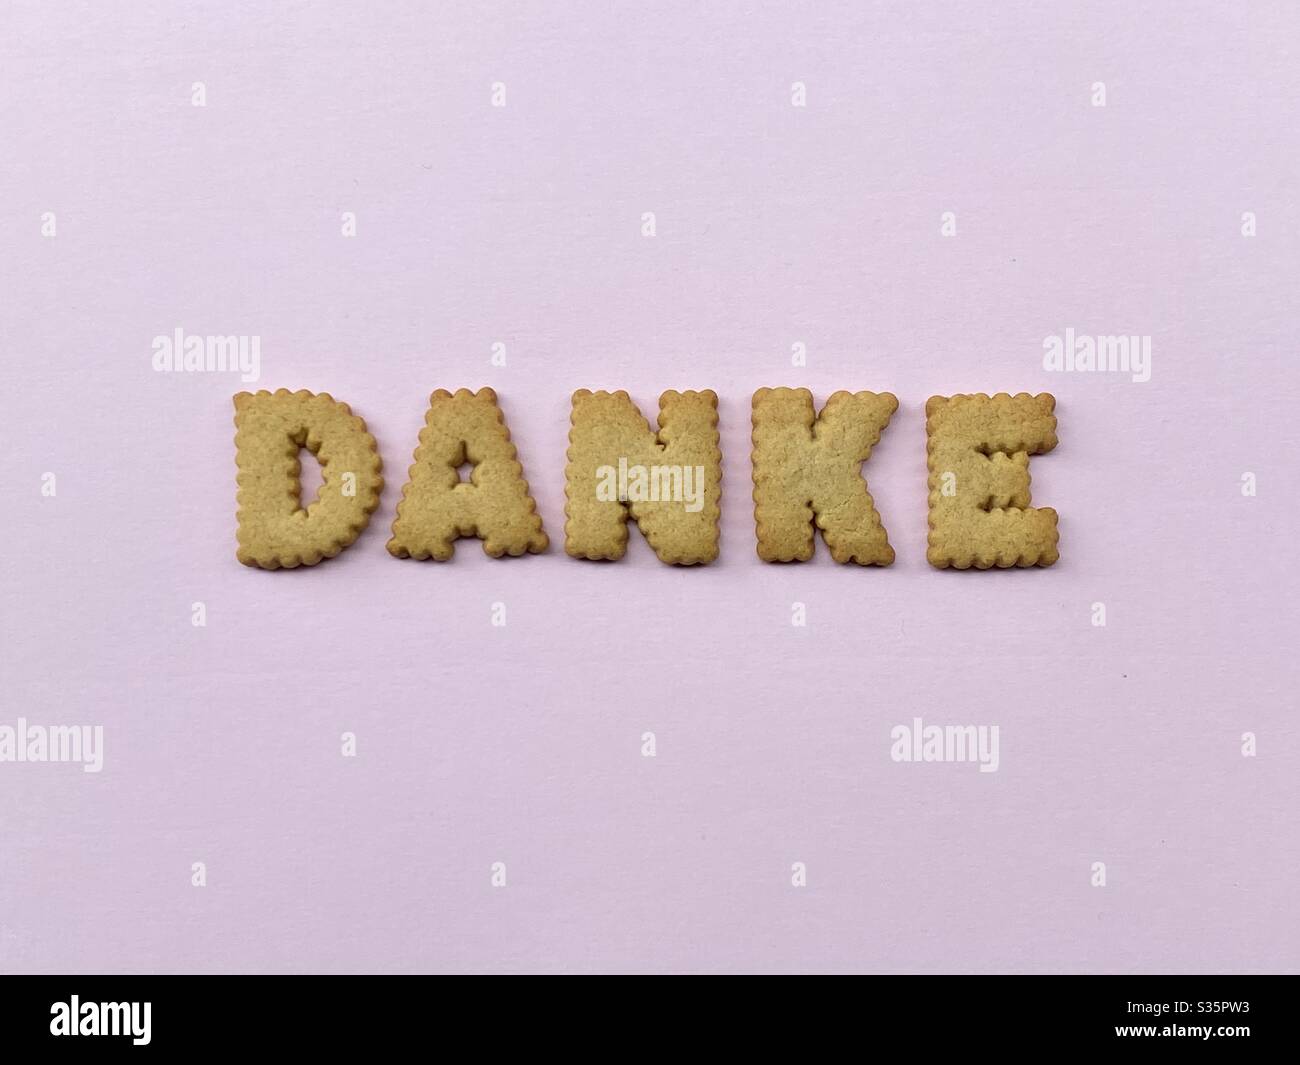 Danke, palabra alemana que significa gracias compuesto con letras caseras galletas sobre color rosa Foto de stock